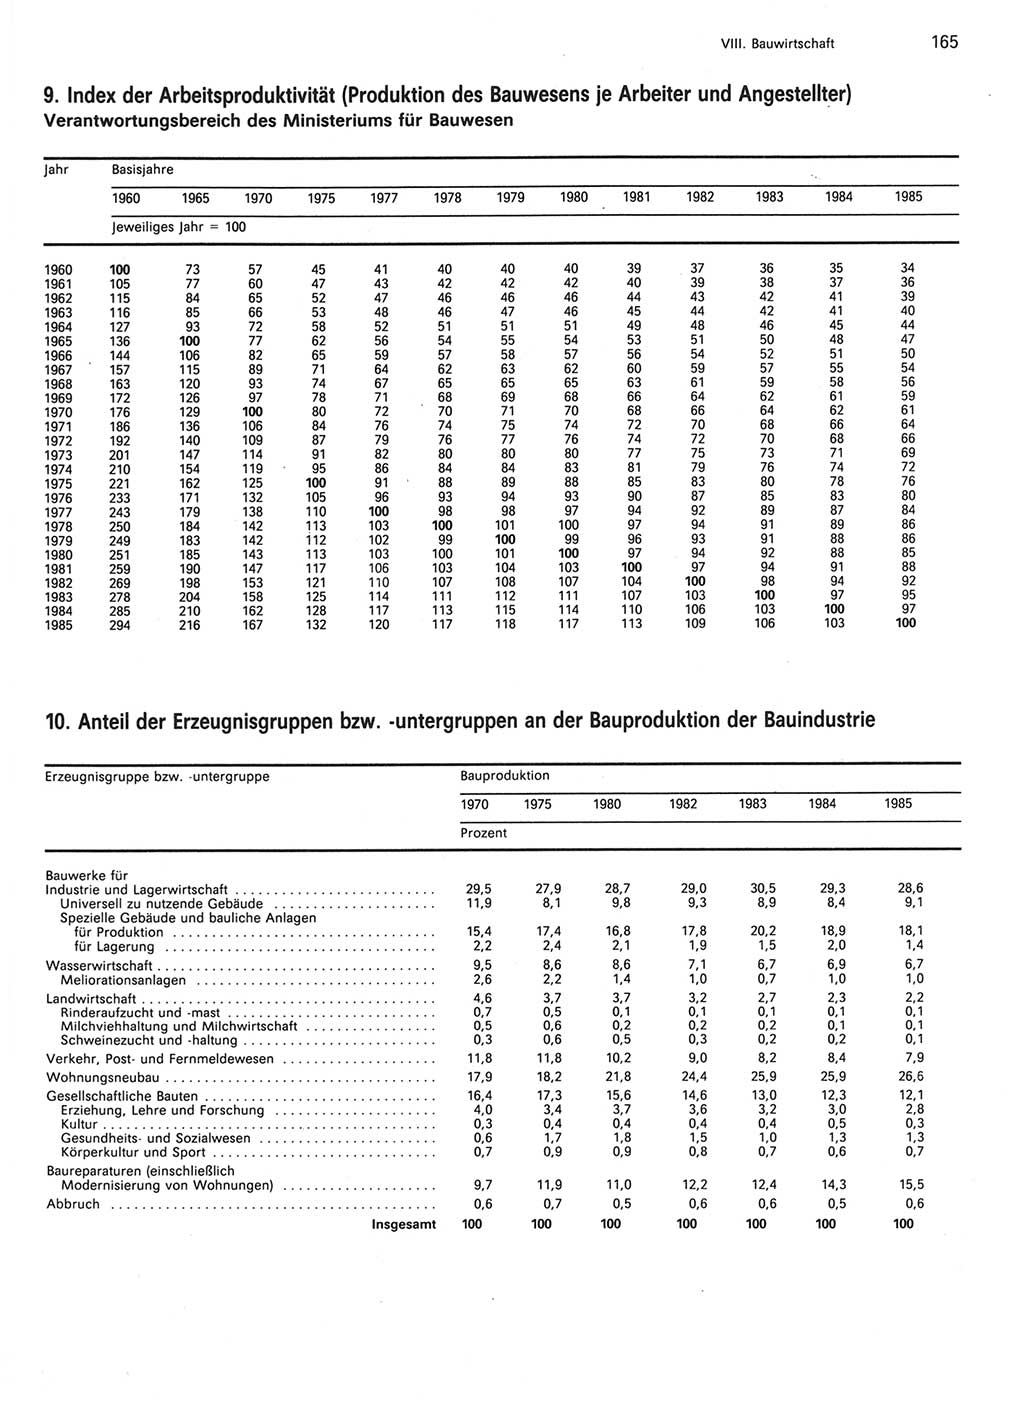 Statistisches Jahrbuch der Deutschen Demokratischen Republik (DDR) 1986, Seite 165 (Stat. Jb. DDR 1986, S. 165)